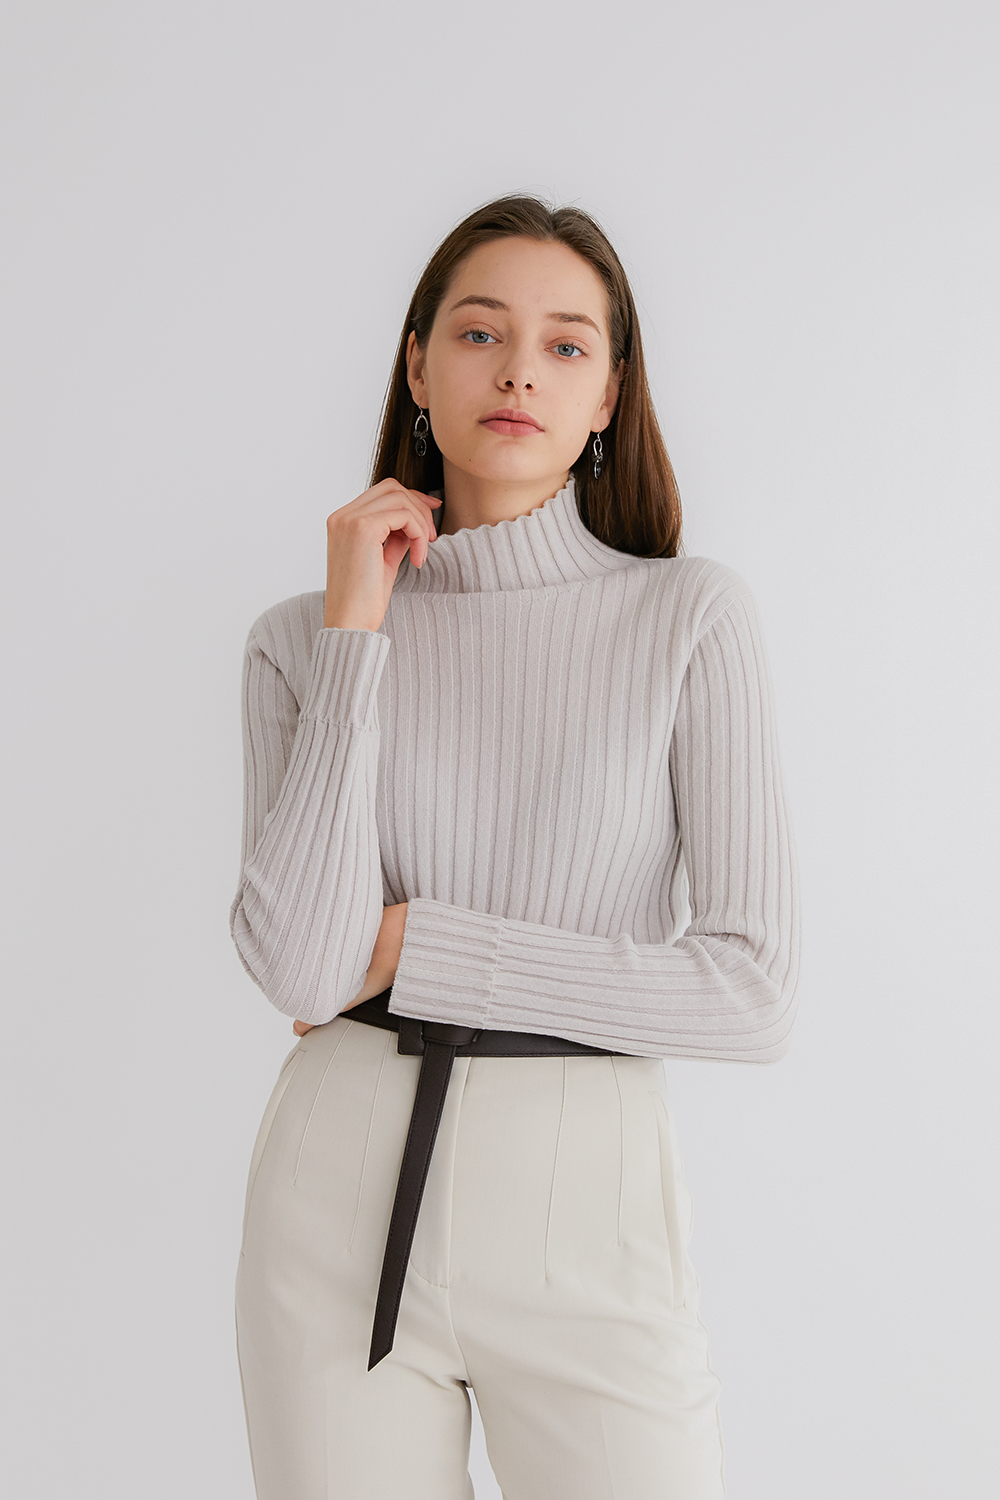 프리미엄 캐시미어 100 골지 스웨터 [Pure cashmere100 ribbed soft-touch sweater by whole-garment knitting - Dove gray]